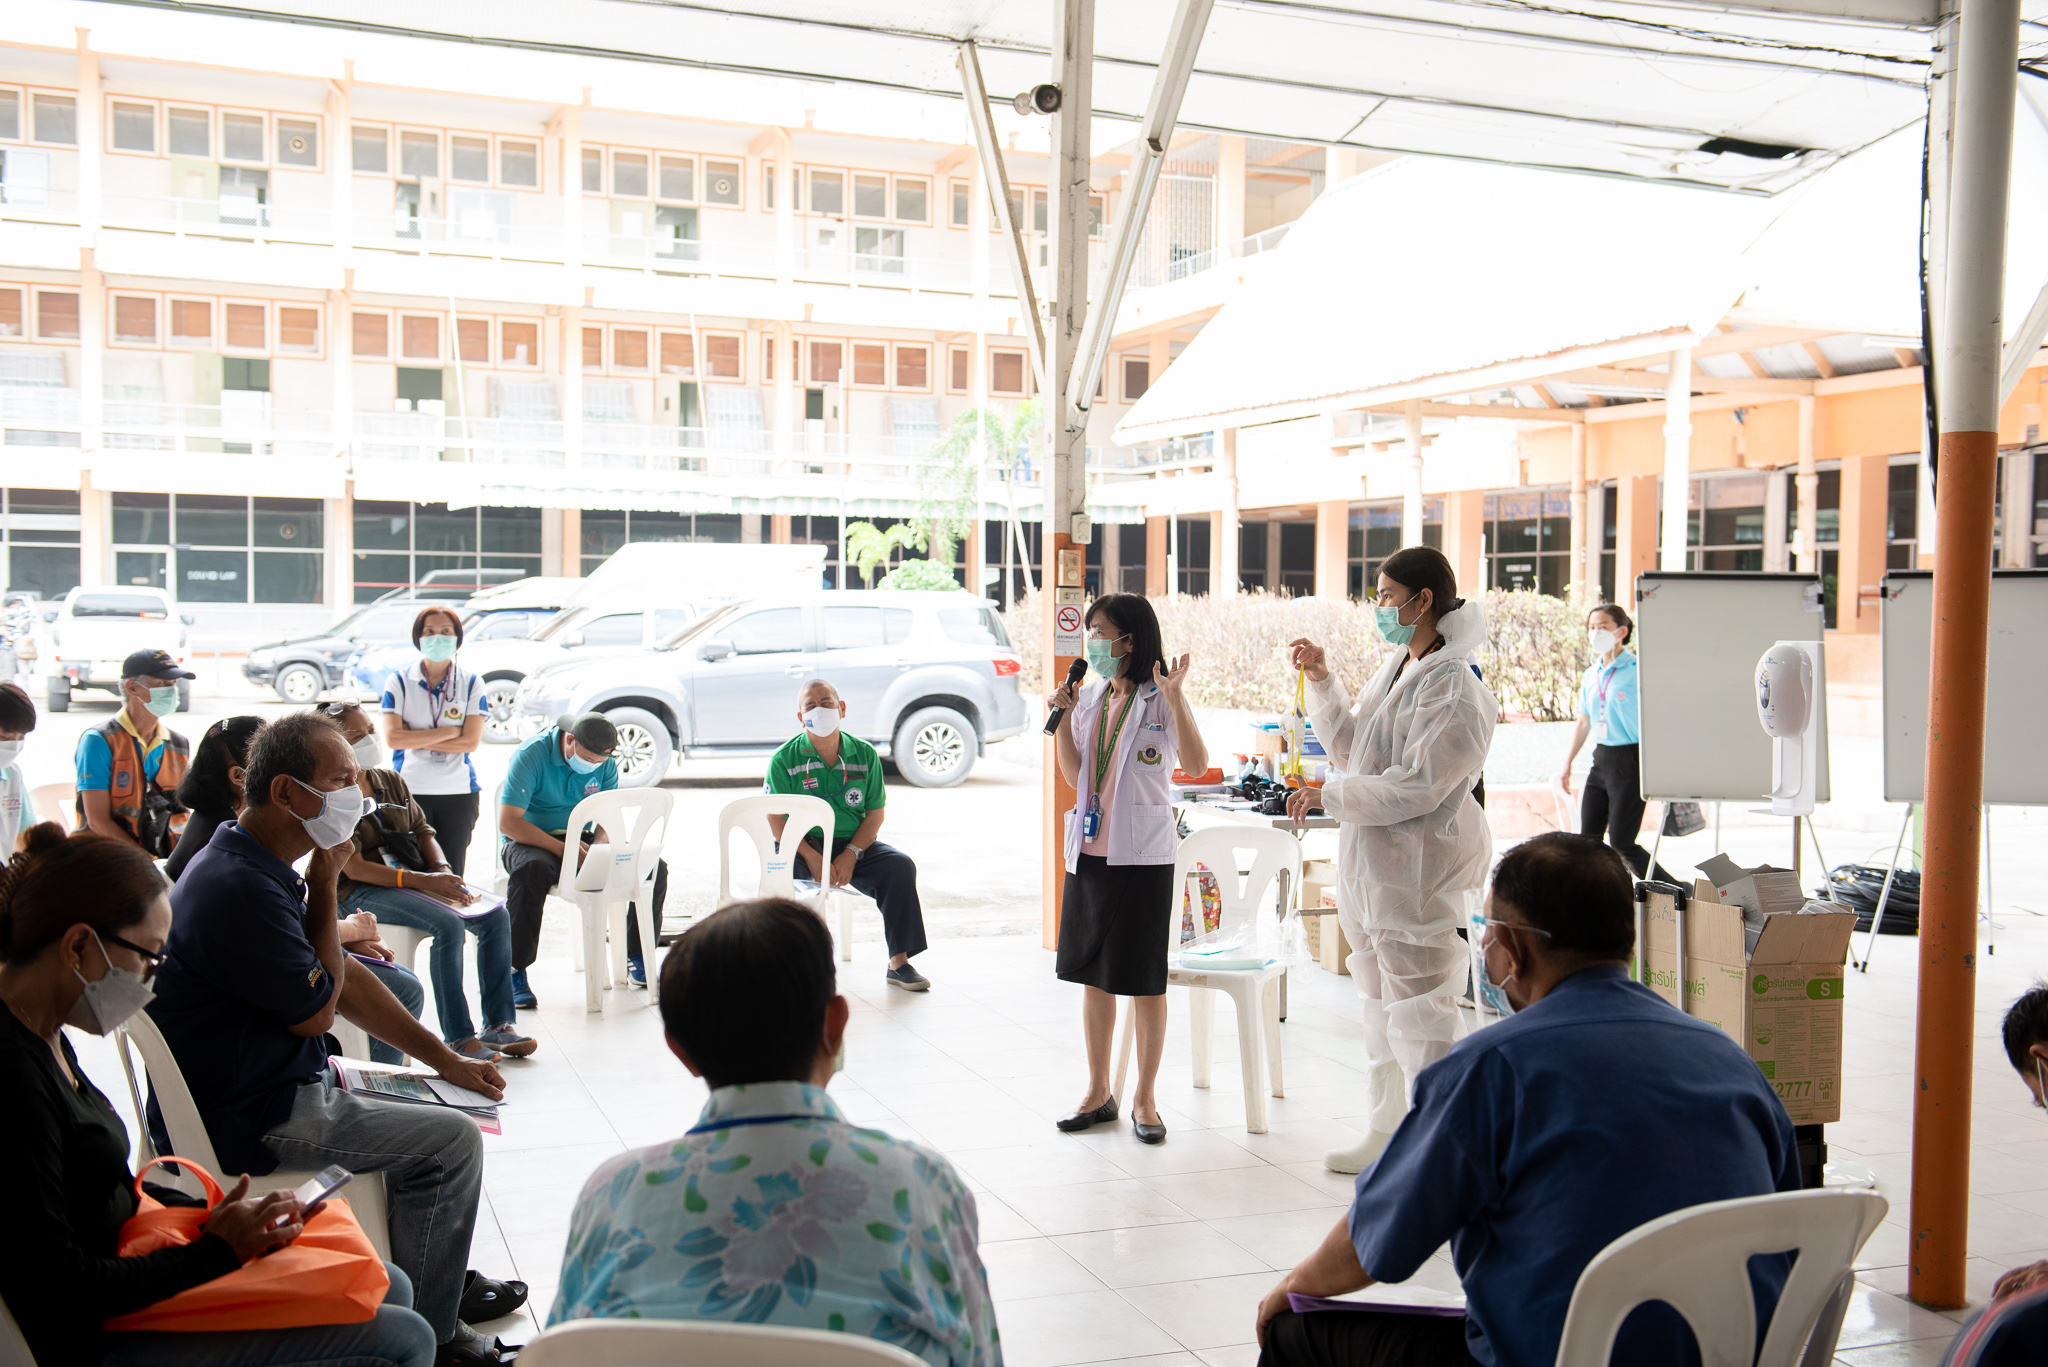 การจัดอบรมอาสาสมัครจิตอาสา เพื่อดูแลผู้ป่วยแบบ Community Isolation ของชุมชนโดยรอบคณะแพทยศาสตร์โรงพยาบาลรามาธิบดี มหาวิทยาลัยมหิดล